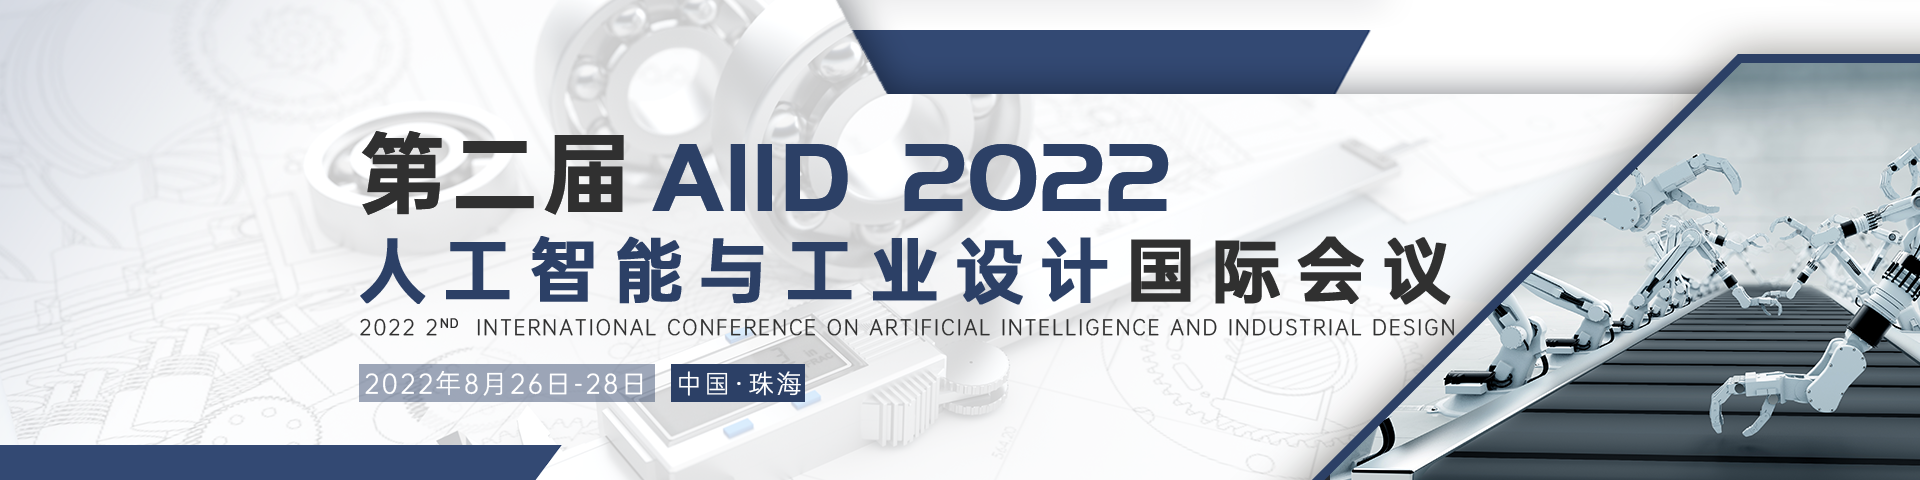 8月广州AIID 2022会议艾思banner-何雪仪-20220216.png